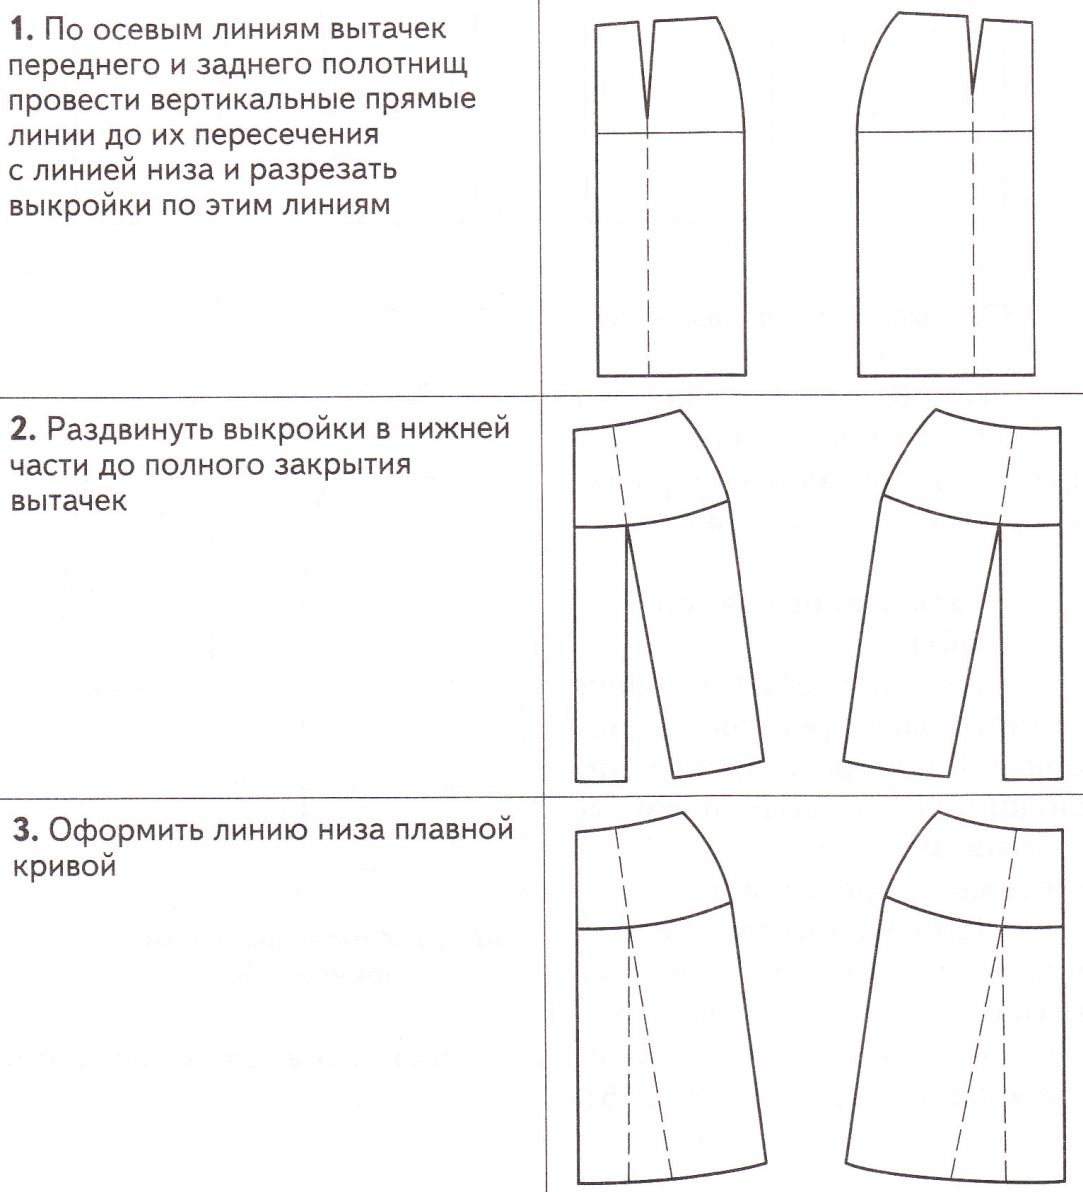 Конспект урока на тему: Моделирование юбки (6 класс)